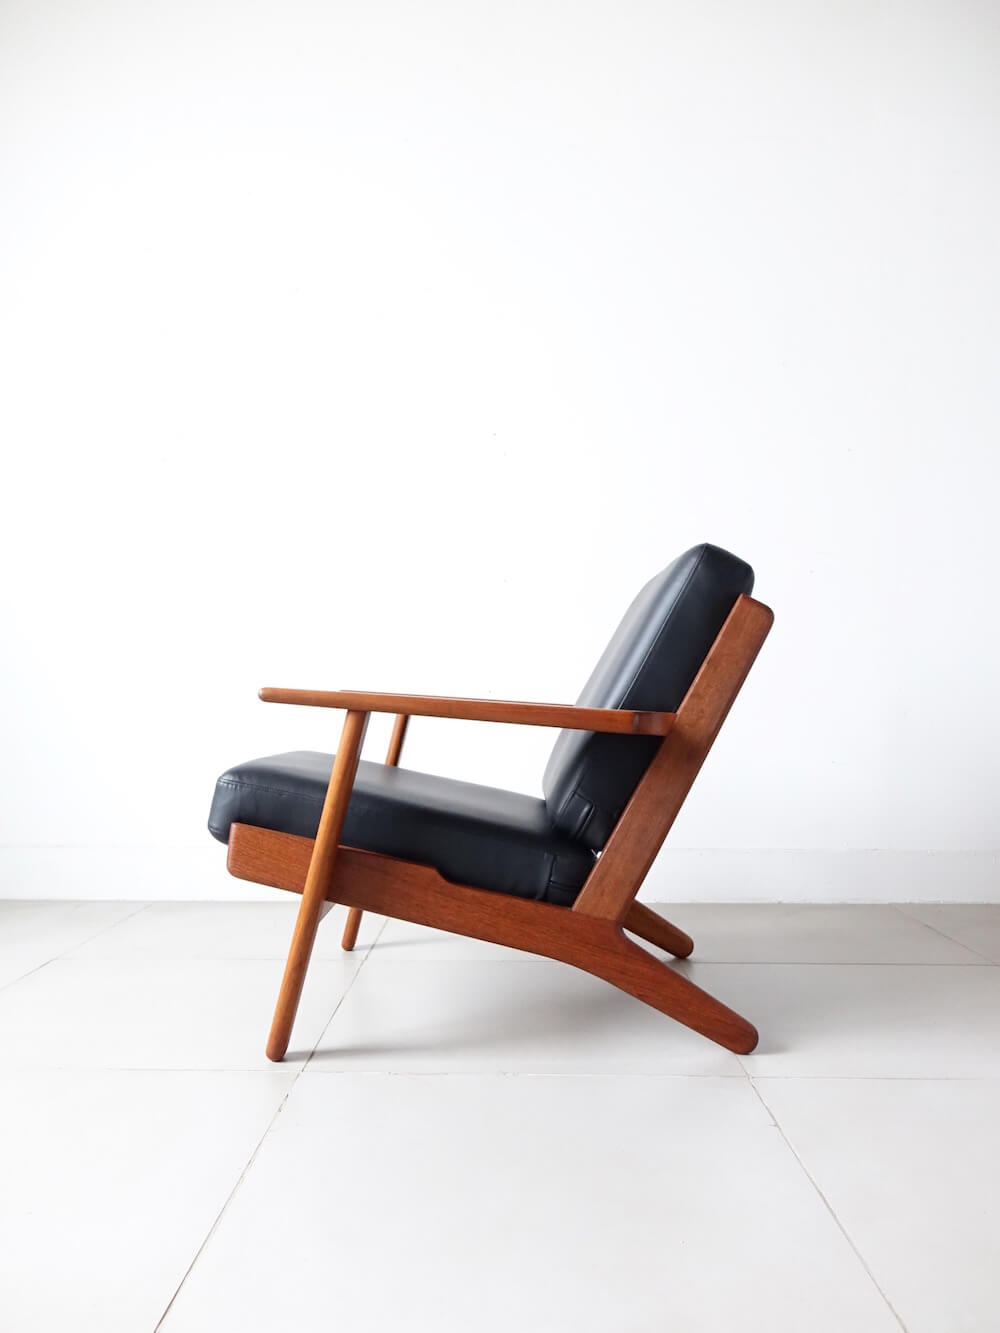 Eazy chair “GE290" by Hans J. Wegner in teak